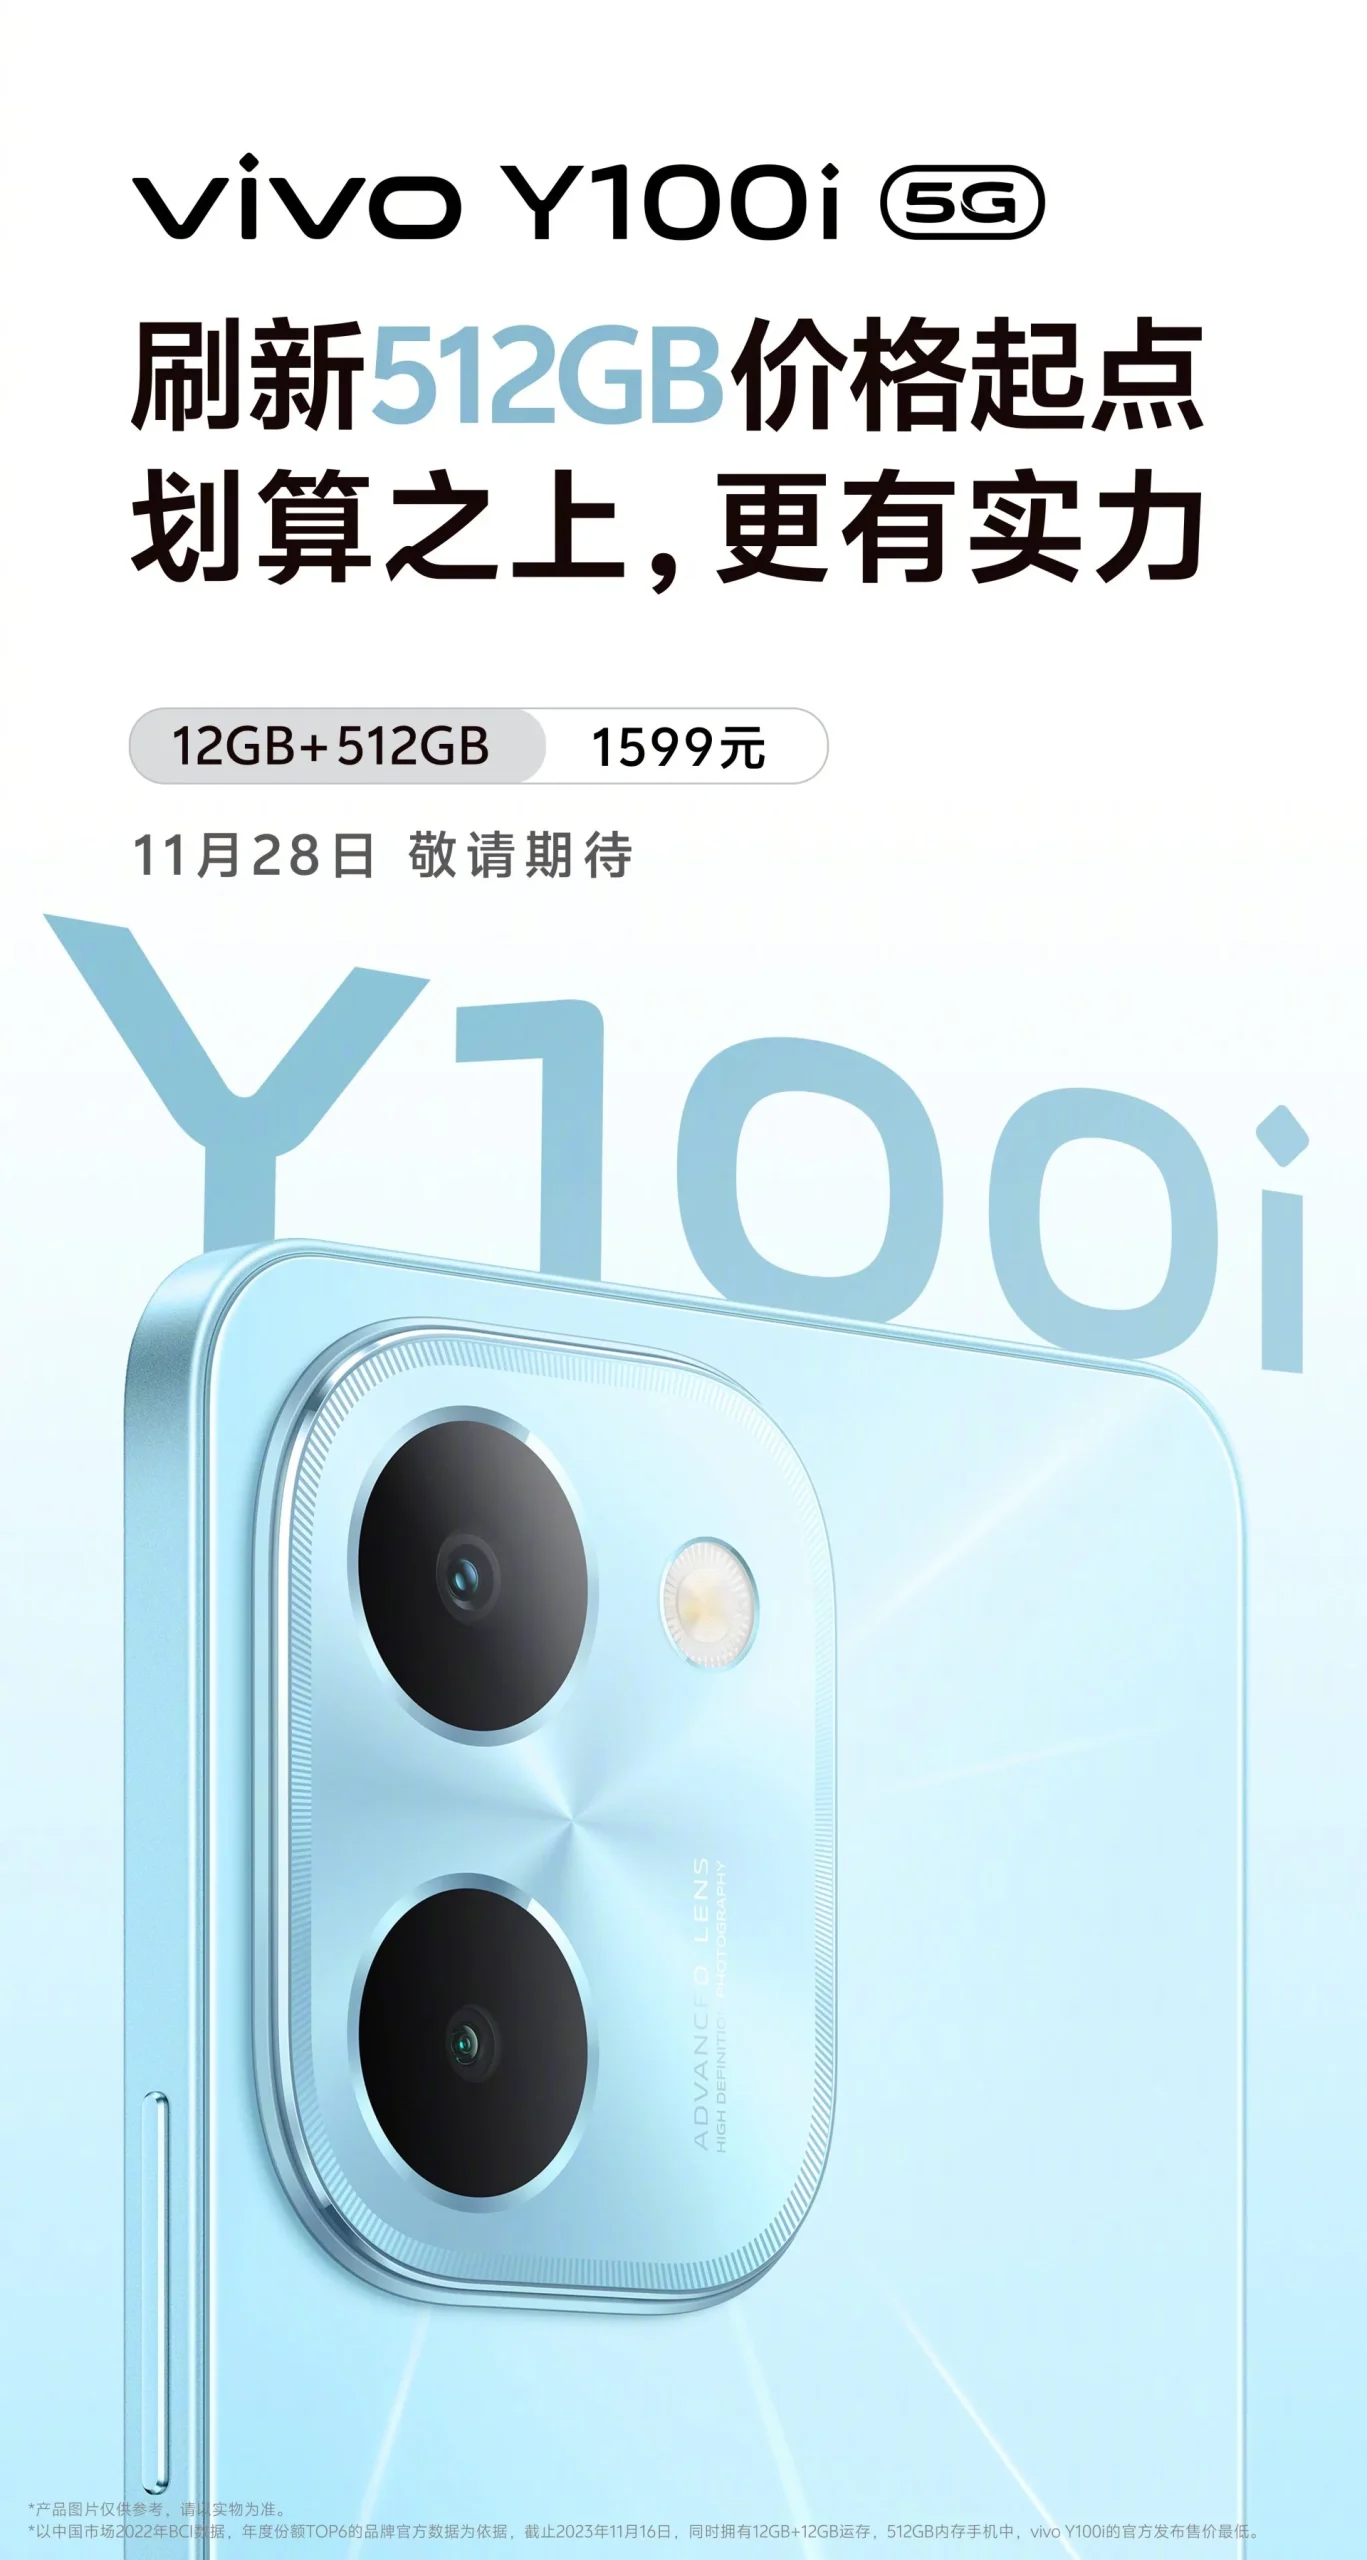 Vivo Y100i 5G özellikleri